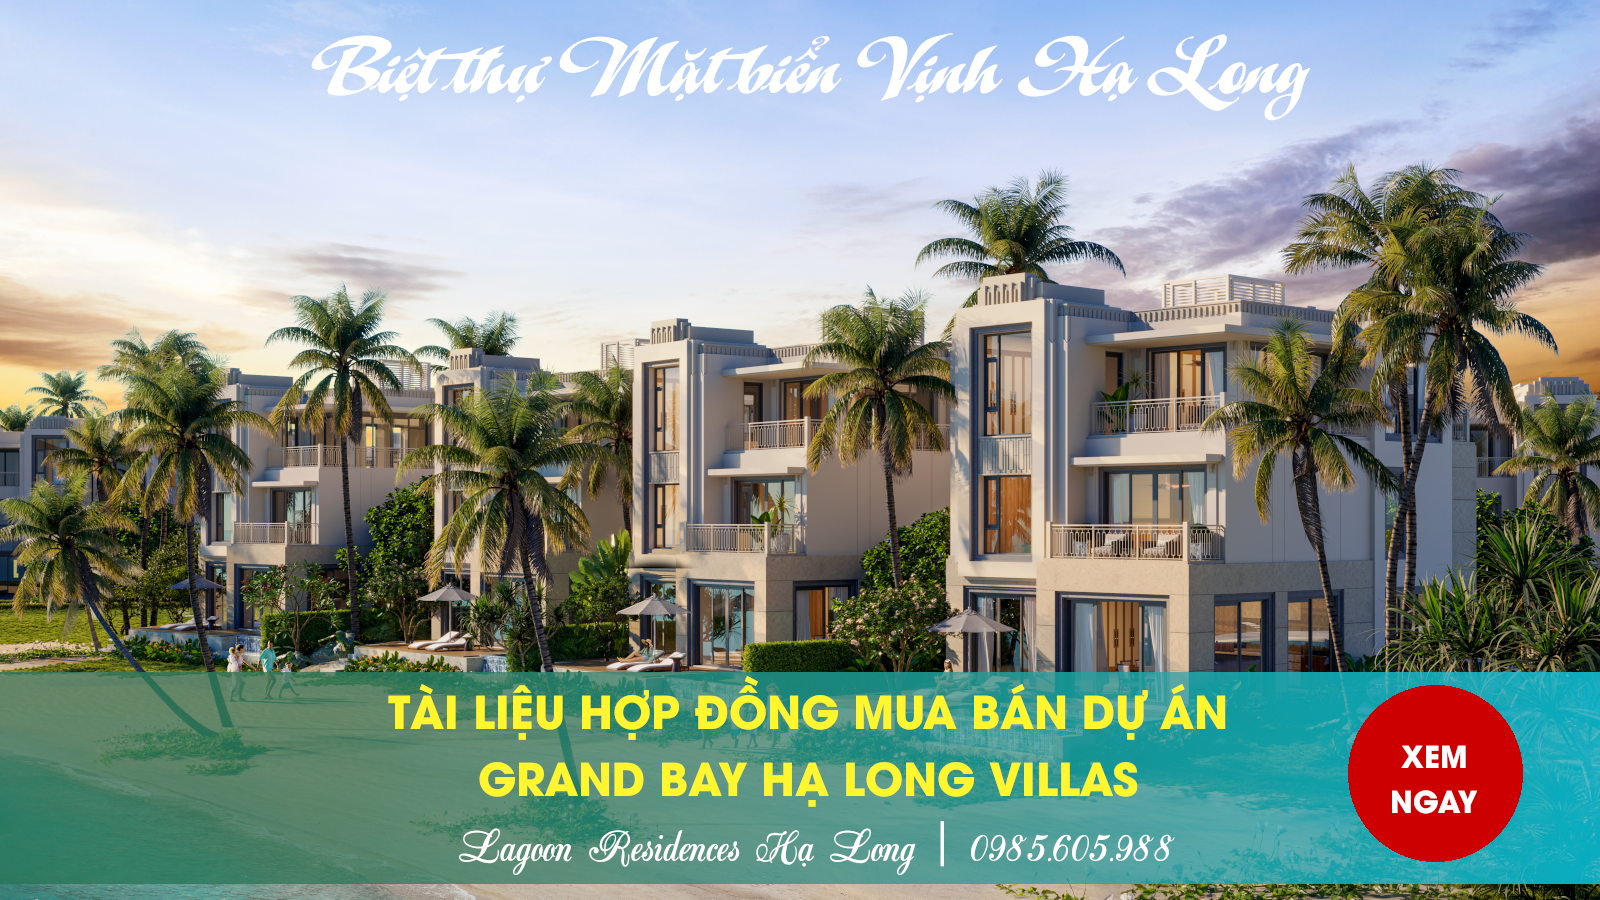 Hợp đồng Mua Bán Biệt thự Lagoon Residences | Grand Bay Hạ Long